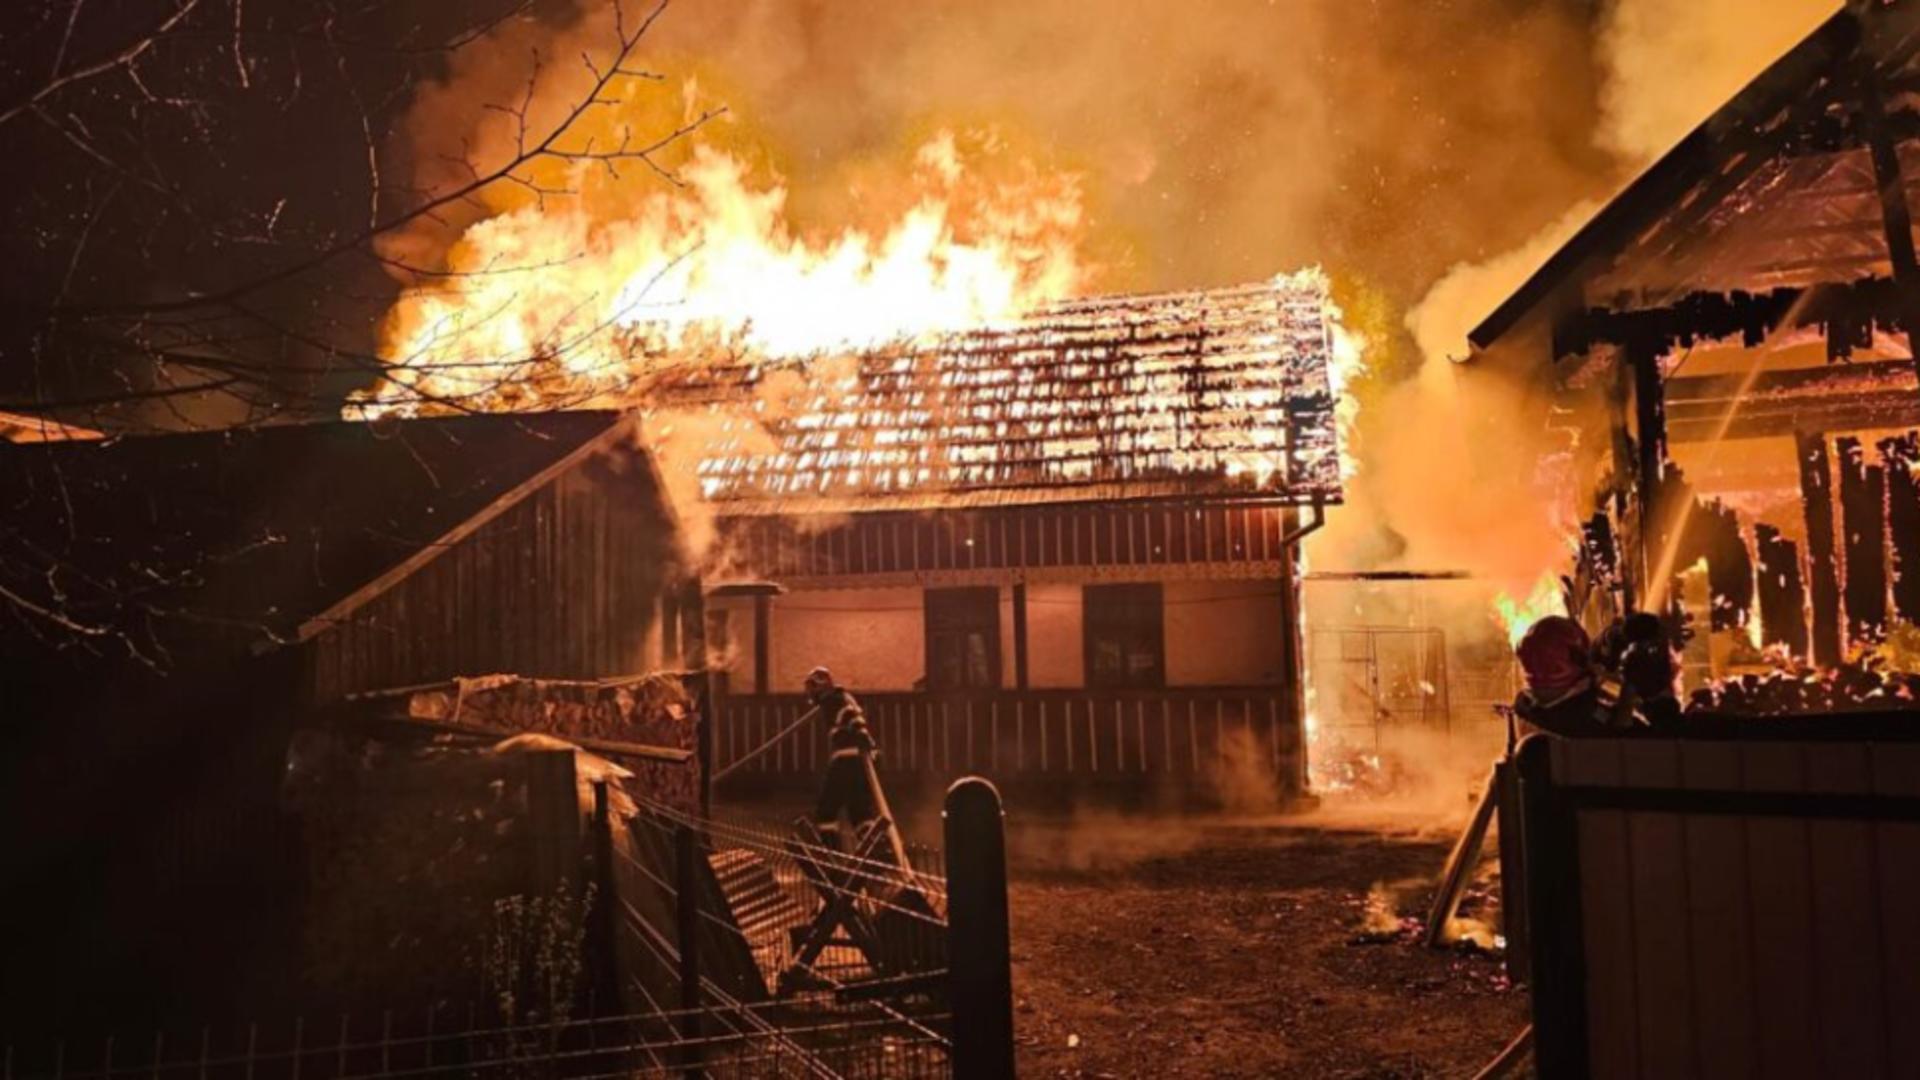 Sfârșit tragic pentru un bărbat de 80 de ani din Vaslui. A murit în incendiul care i-a distrus casa din temelii